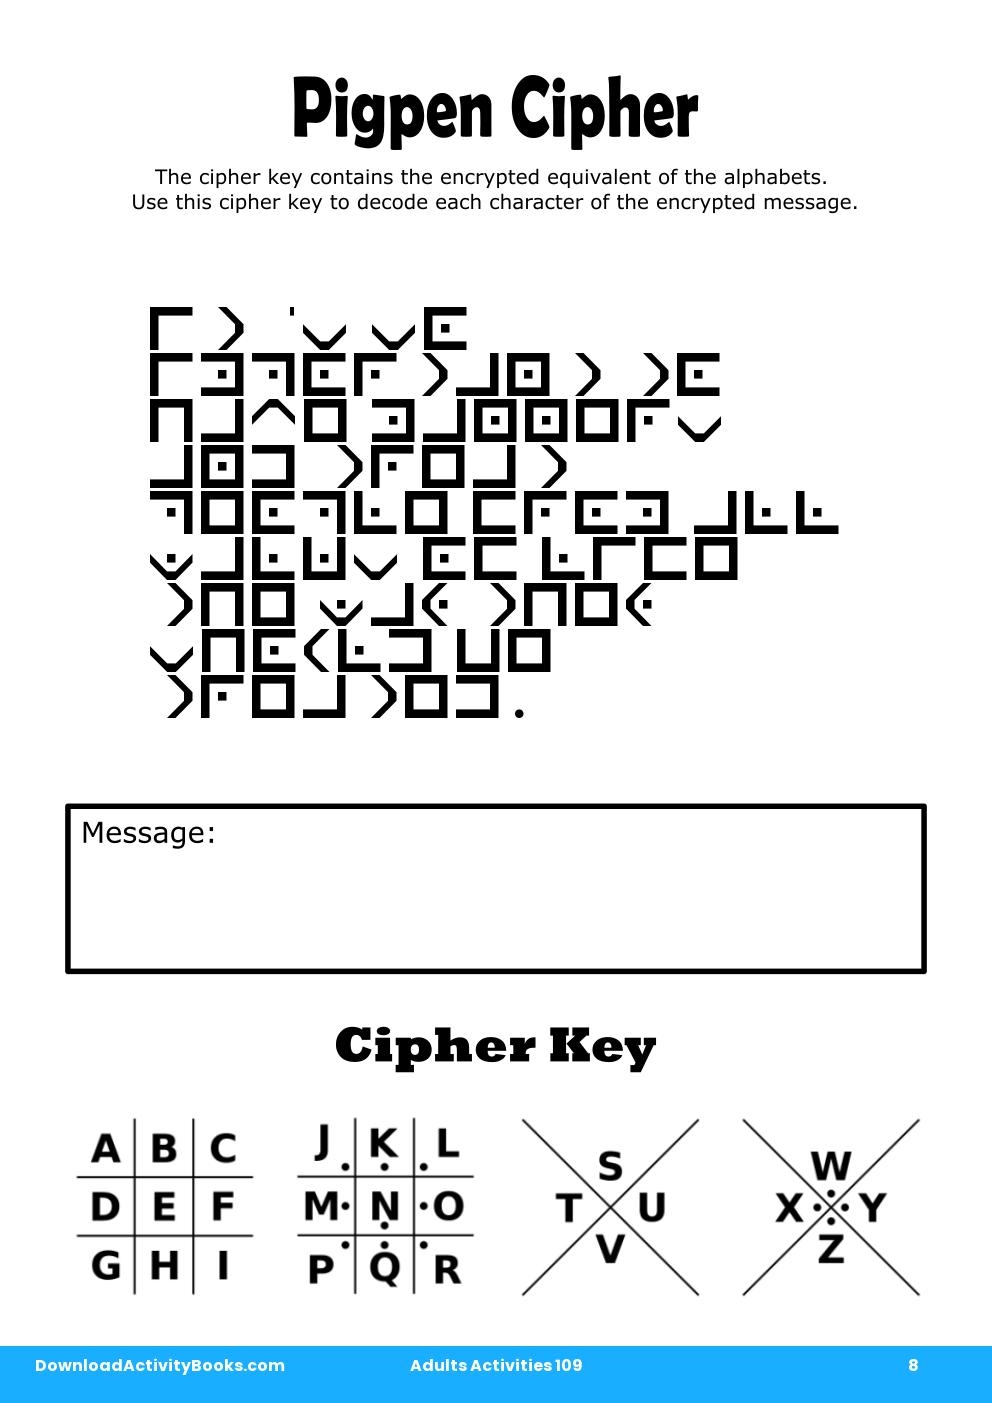 Pigpen Cipher in Adults Activities 109